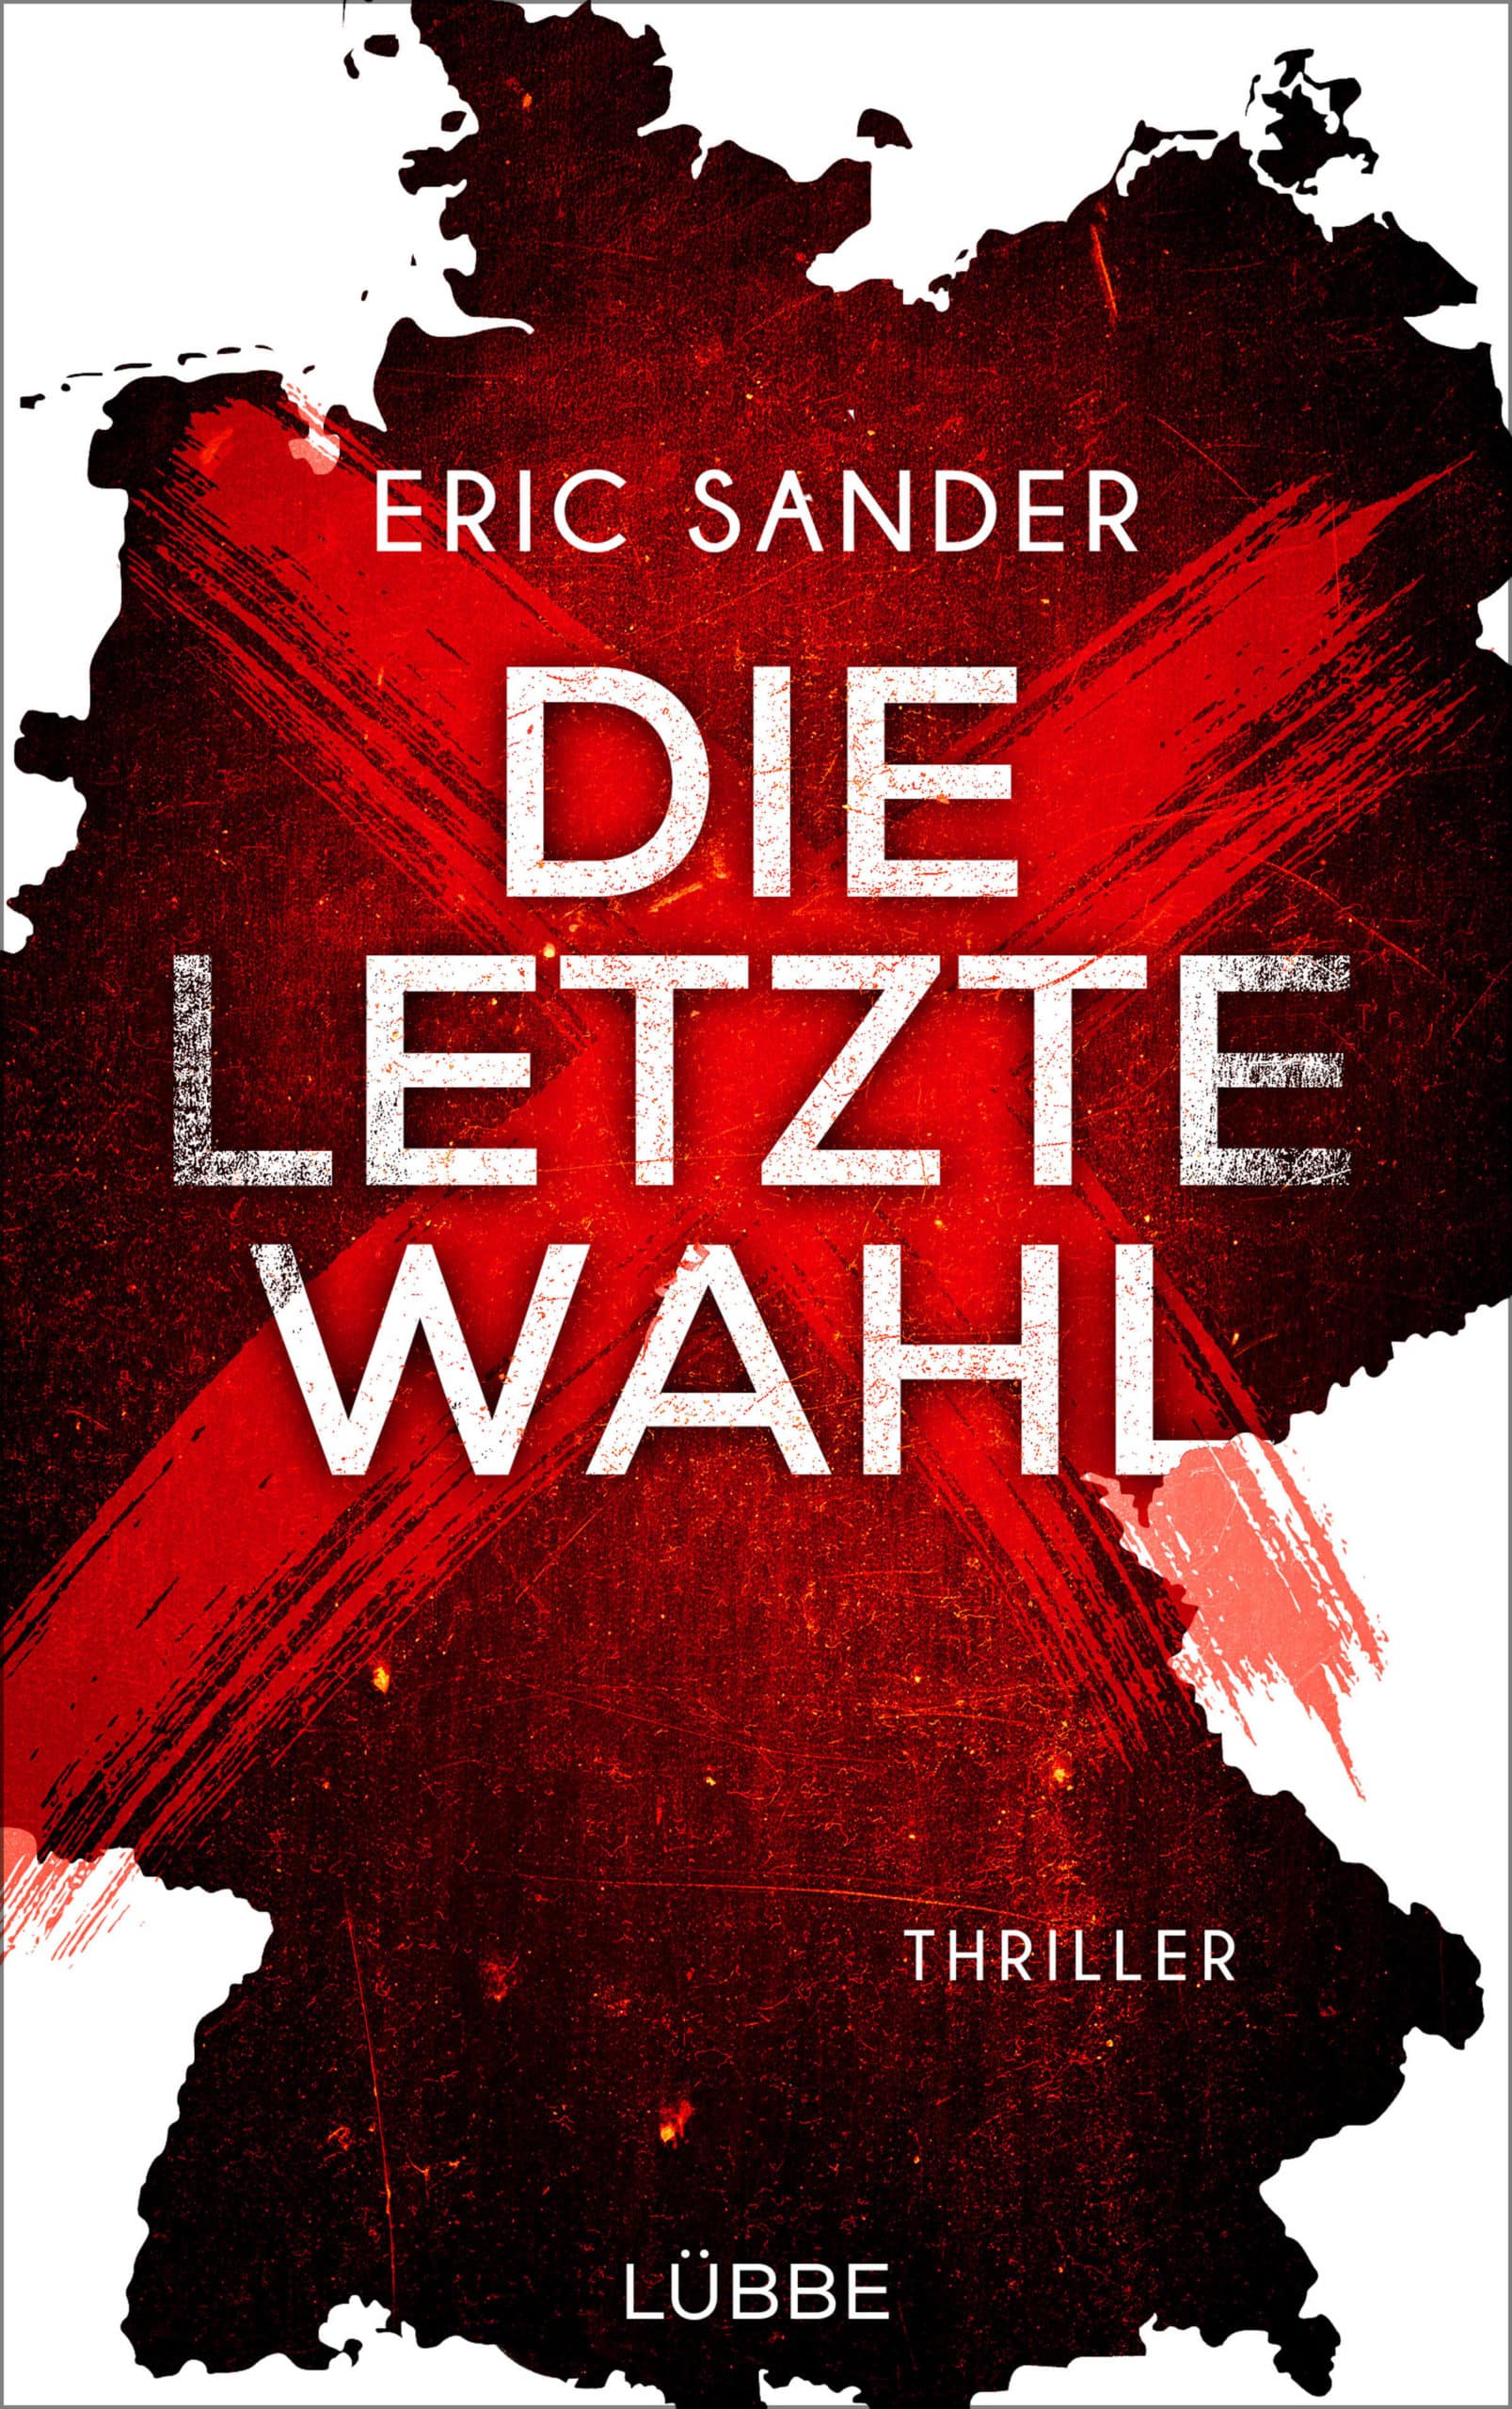 LITL035 [Podcast - Interview] über das Buch: Die letzte Wahl von Eric Sander